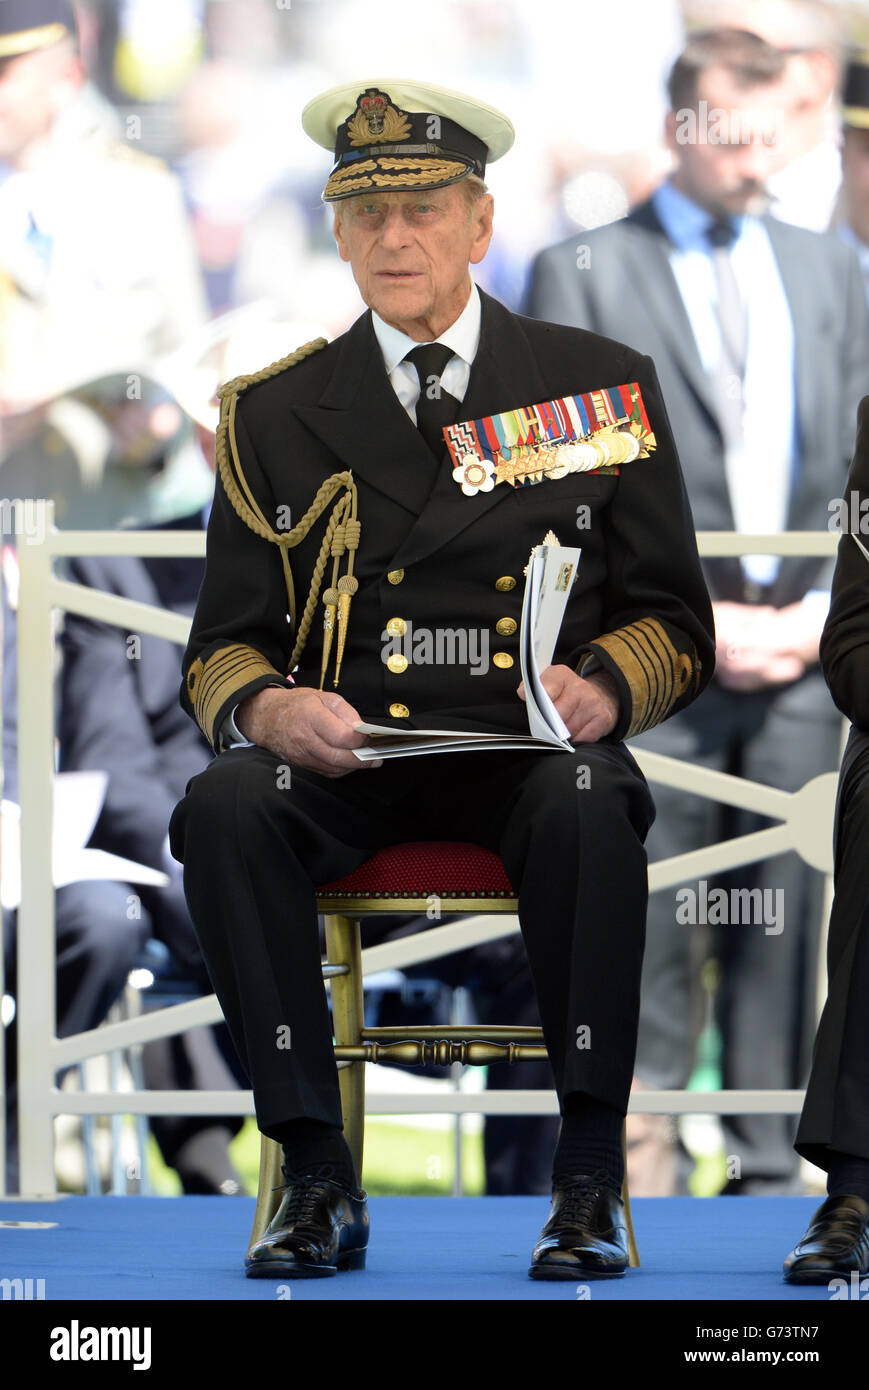 El Príncipe Felipe durante un servicio conmemorativo para conmemorar el 70º aniversario de los desembarcos del día D durante la Segunda Guerra Mundial Foto de stock